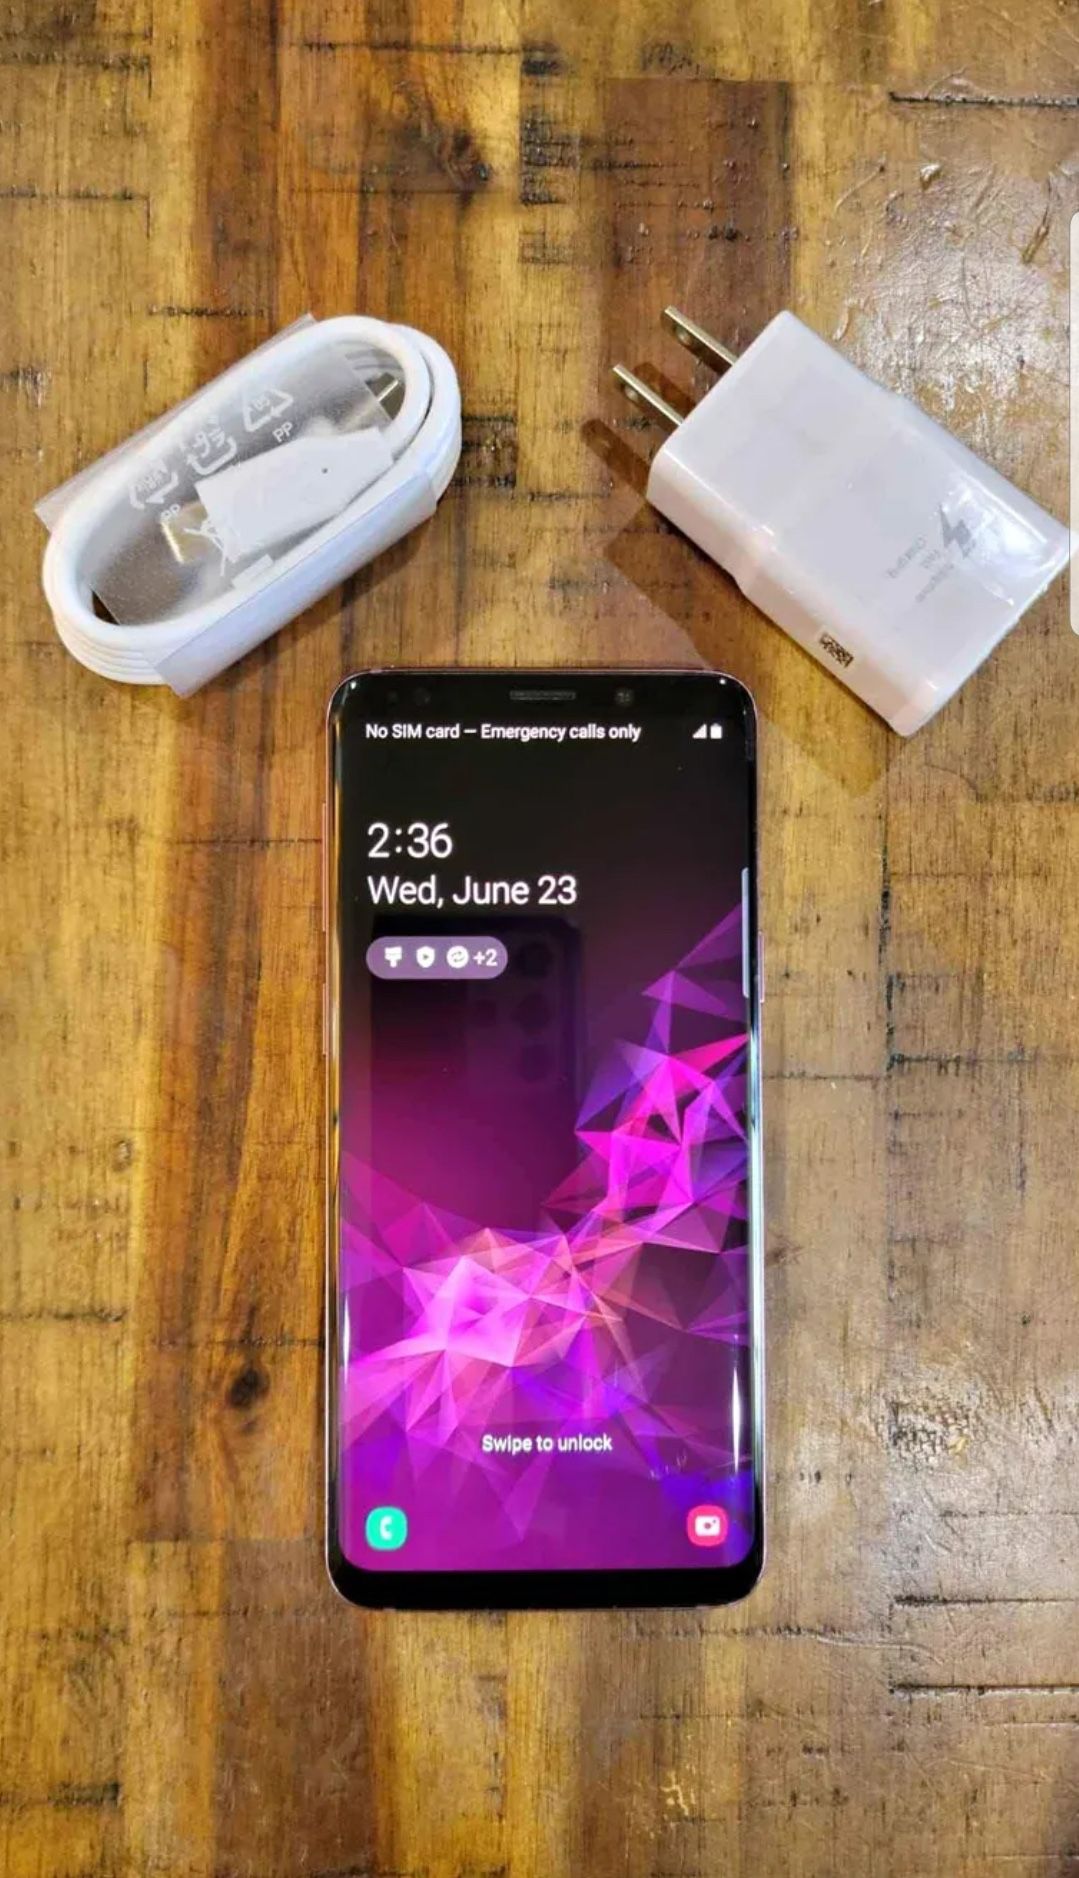 Samsung S9 Unlocked 64gb Galaxy “lilac